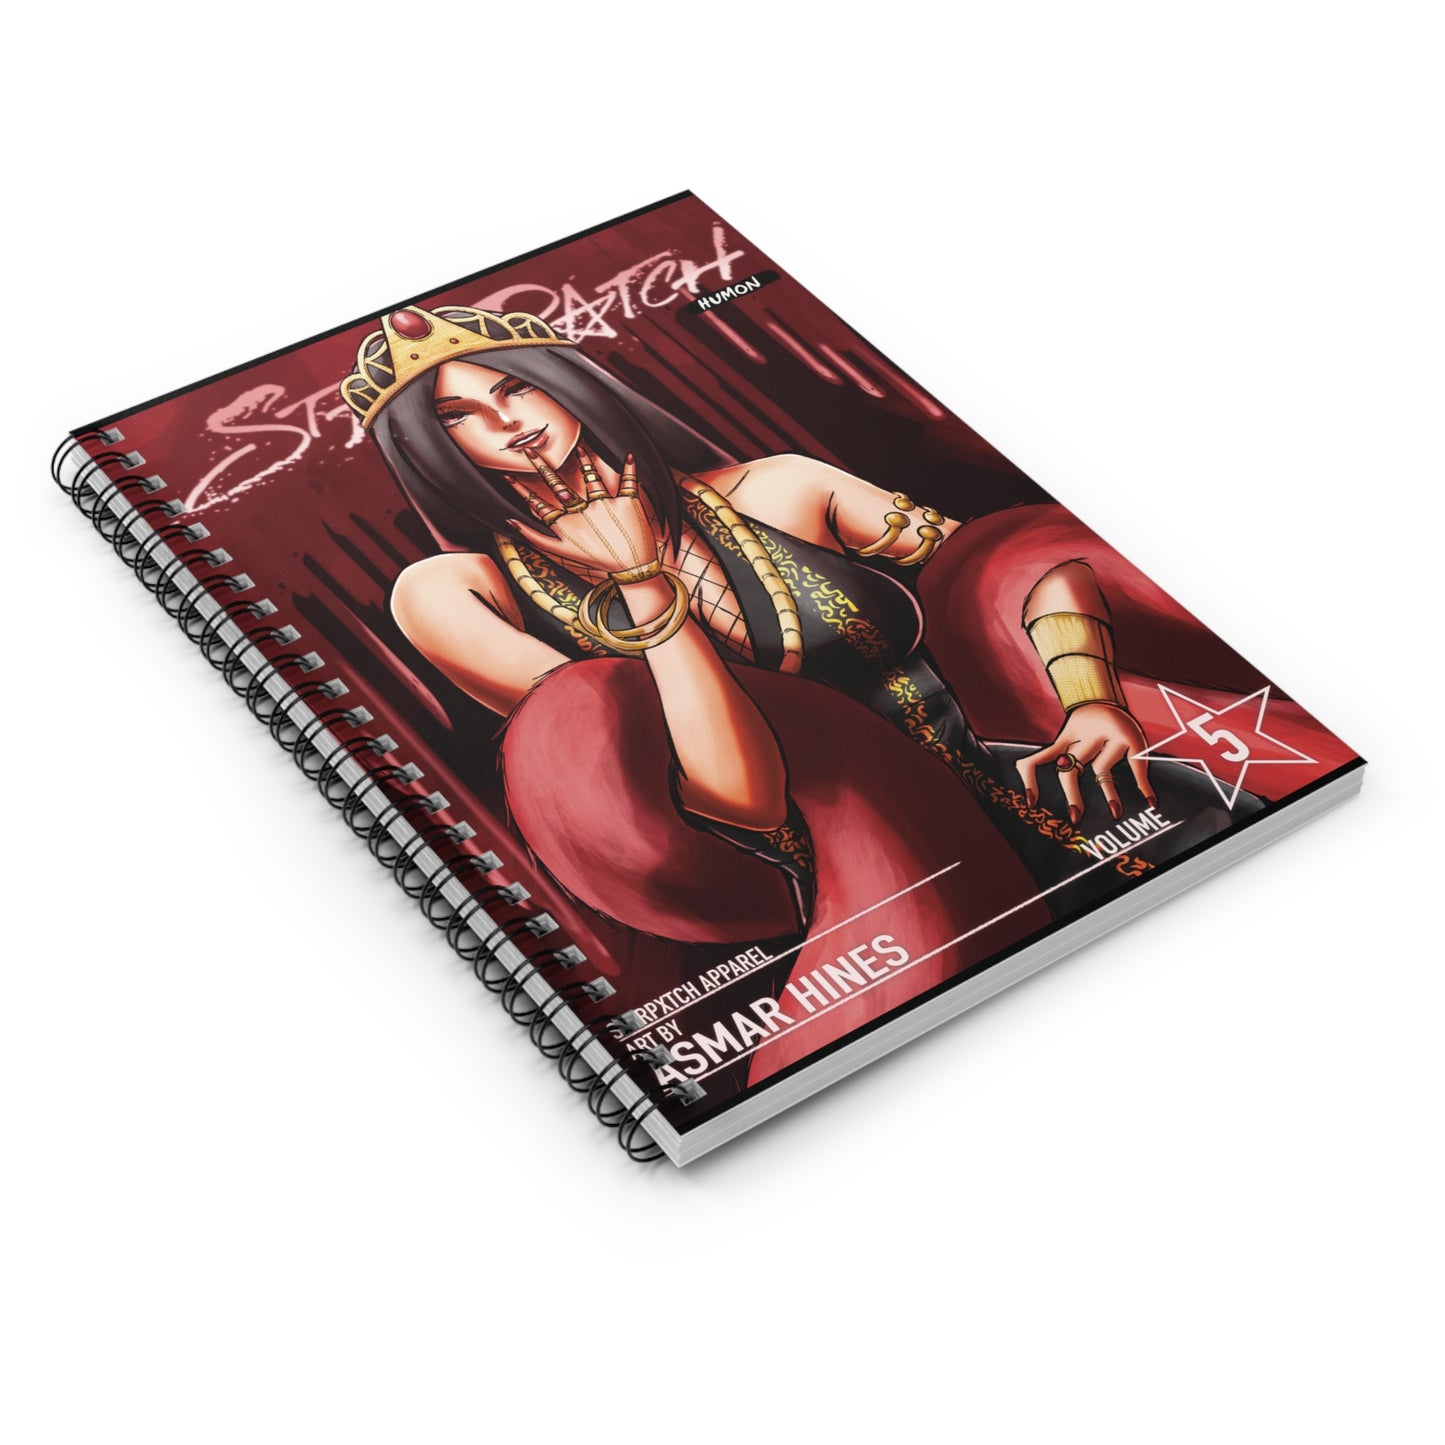 STXRPXTCH Humon Edition Volume Five- Ivelisse Spiral Notebook